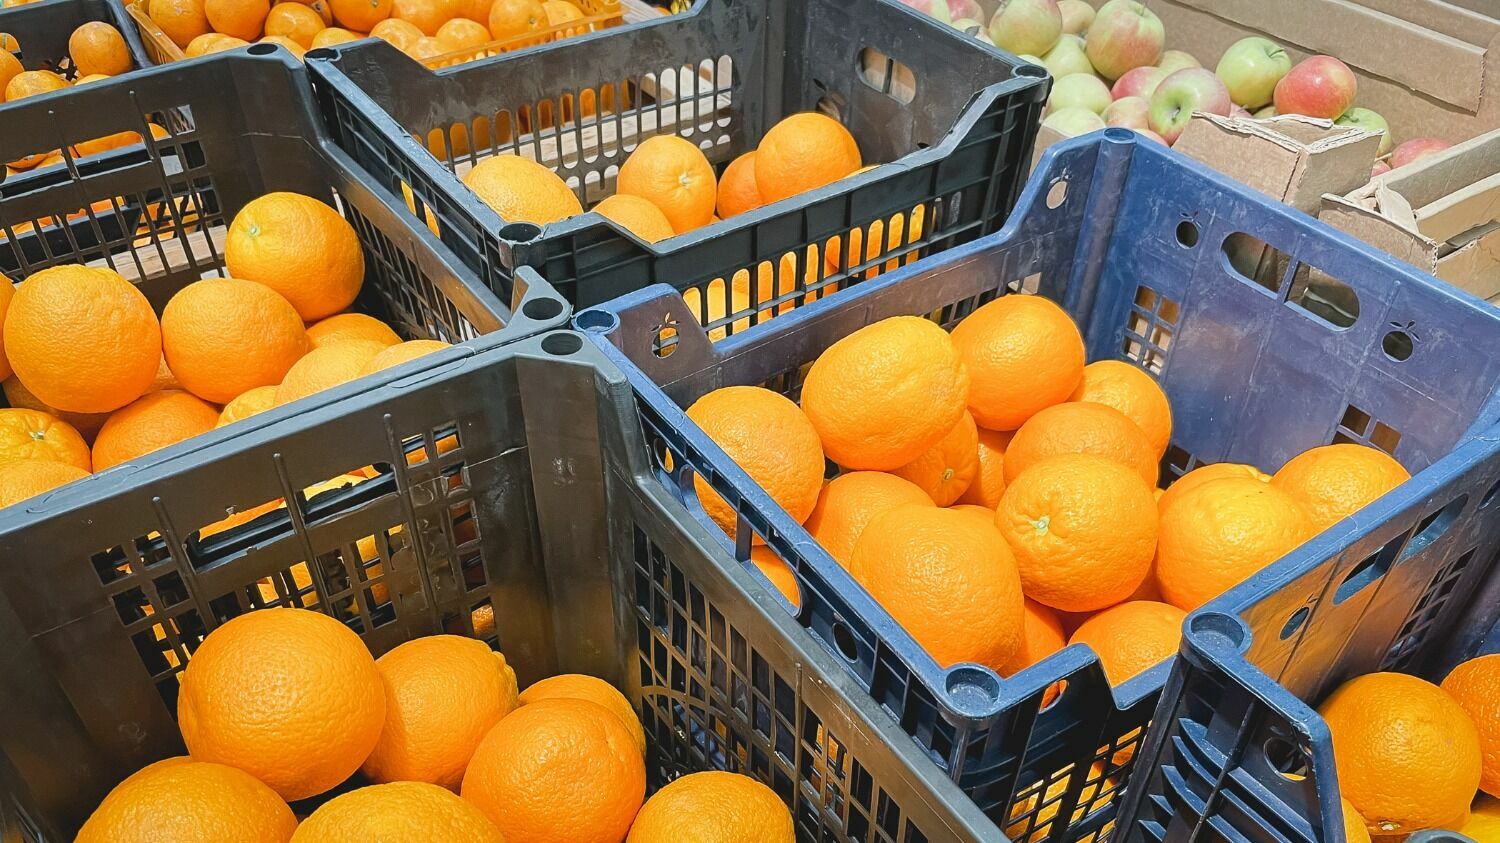 По цене 1 кг огурцов можно взять 4 кг апельсинов